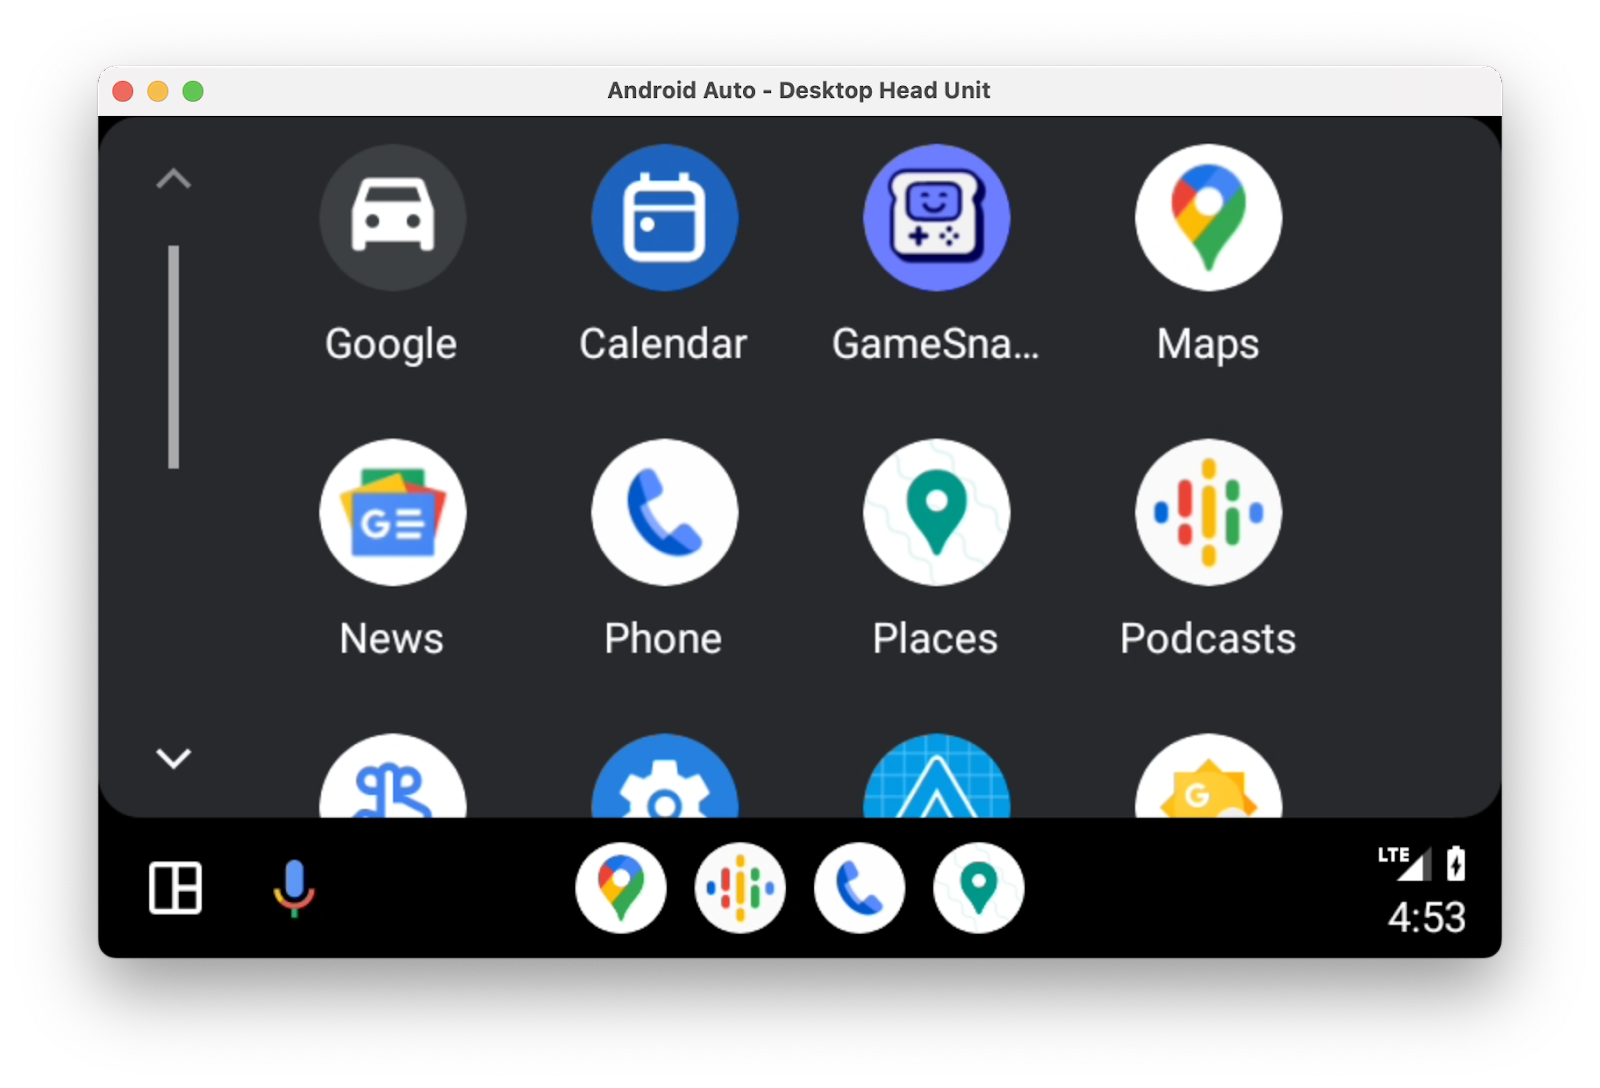 Trình chạy Android Auto cho thấy lưới ứng dụng, trong đó có cả ứng dụng Places (Địa điểm).